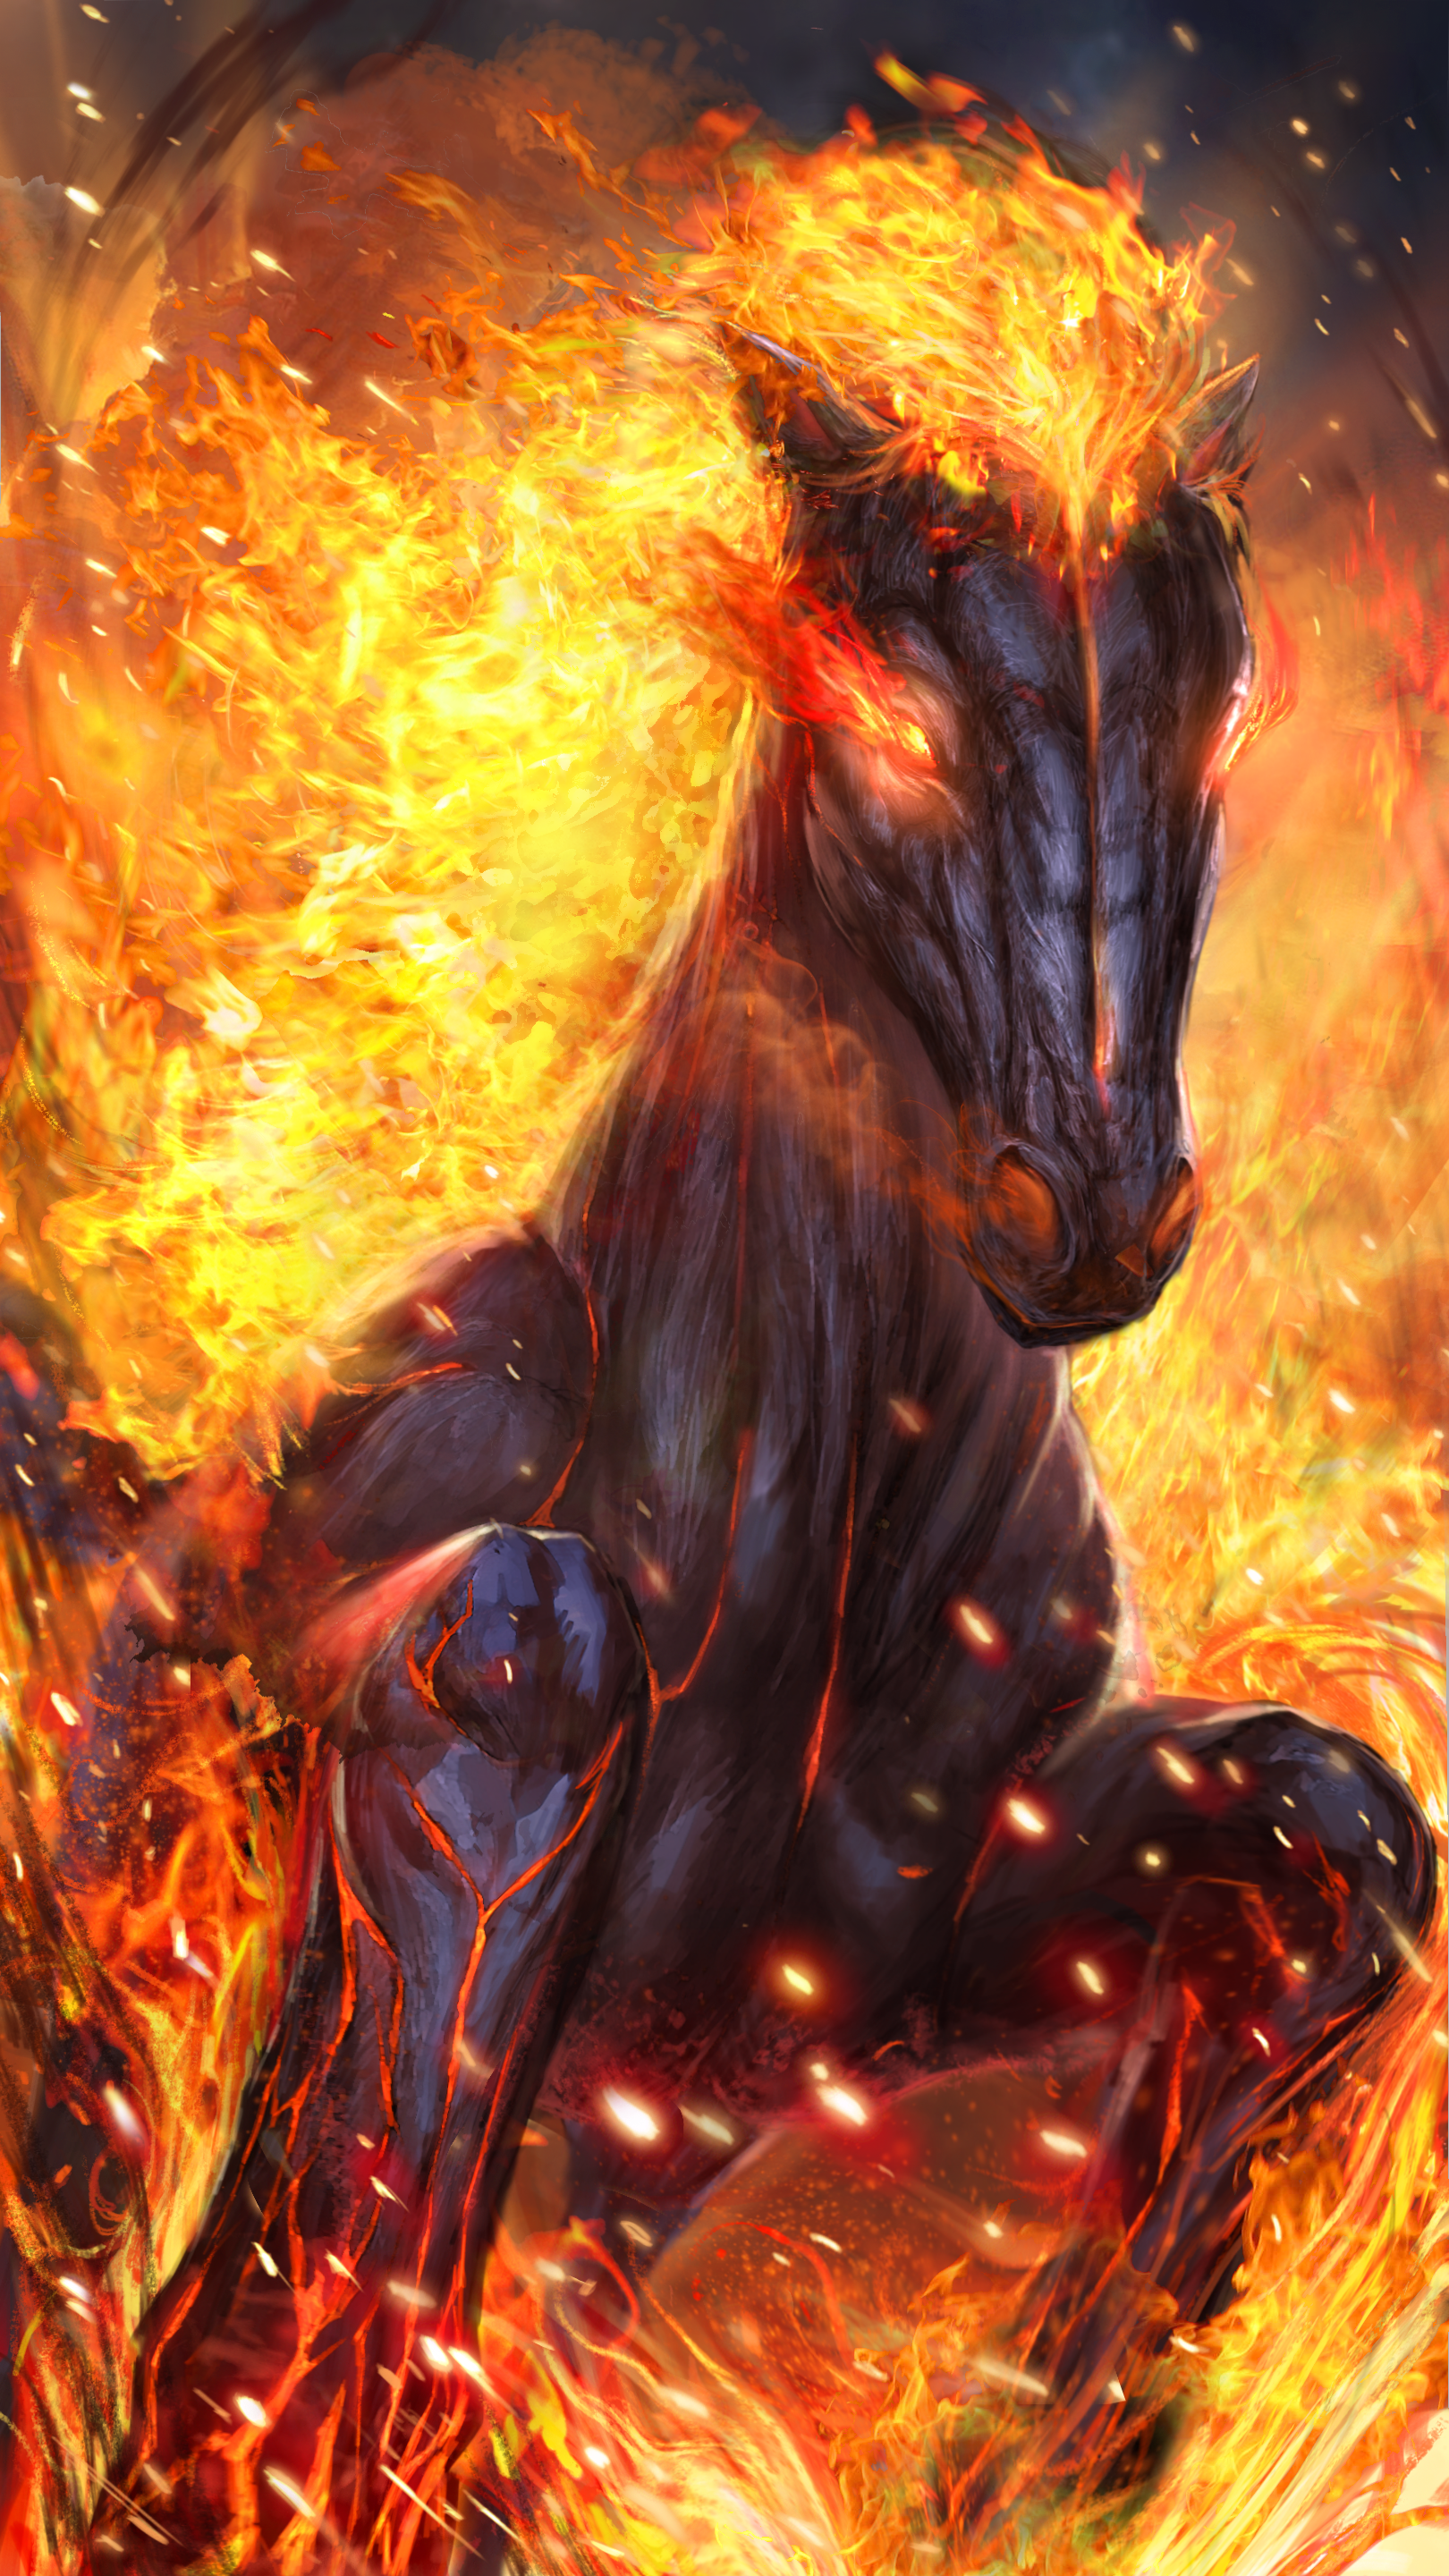 Hot fire horse live wallpaper!. Fire art, Fire horse, Horses